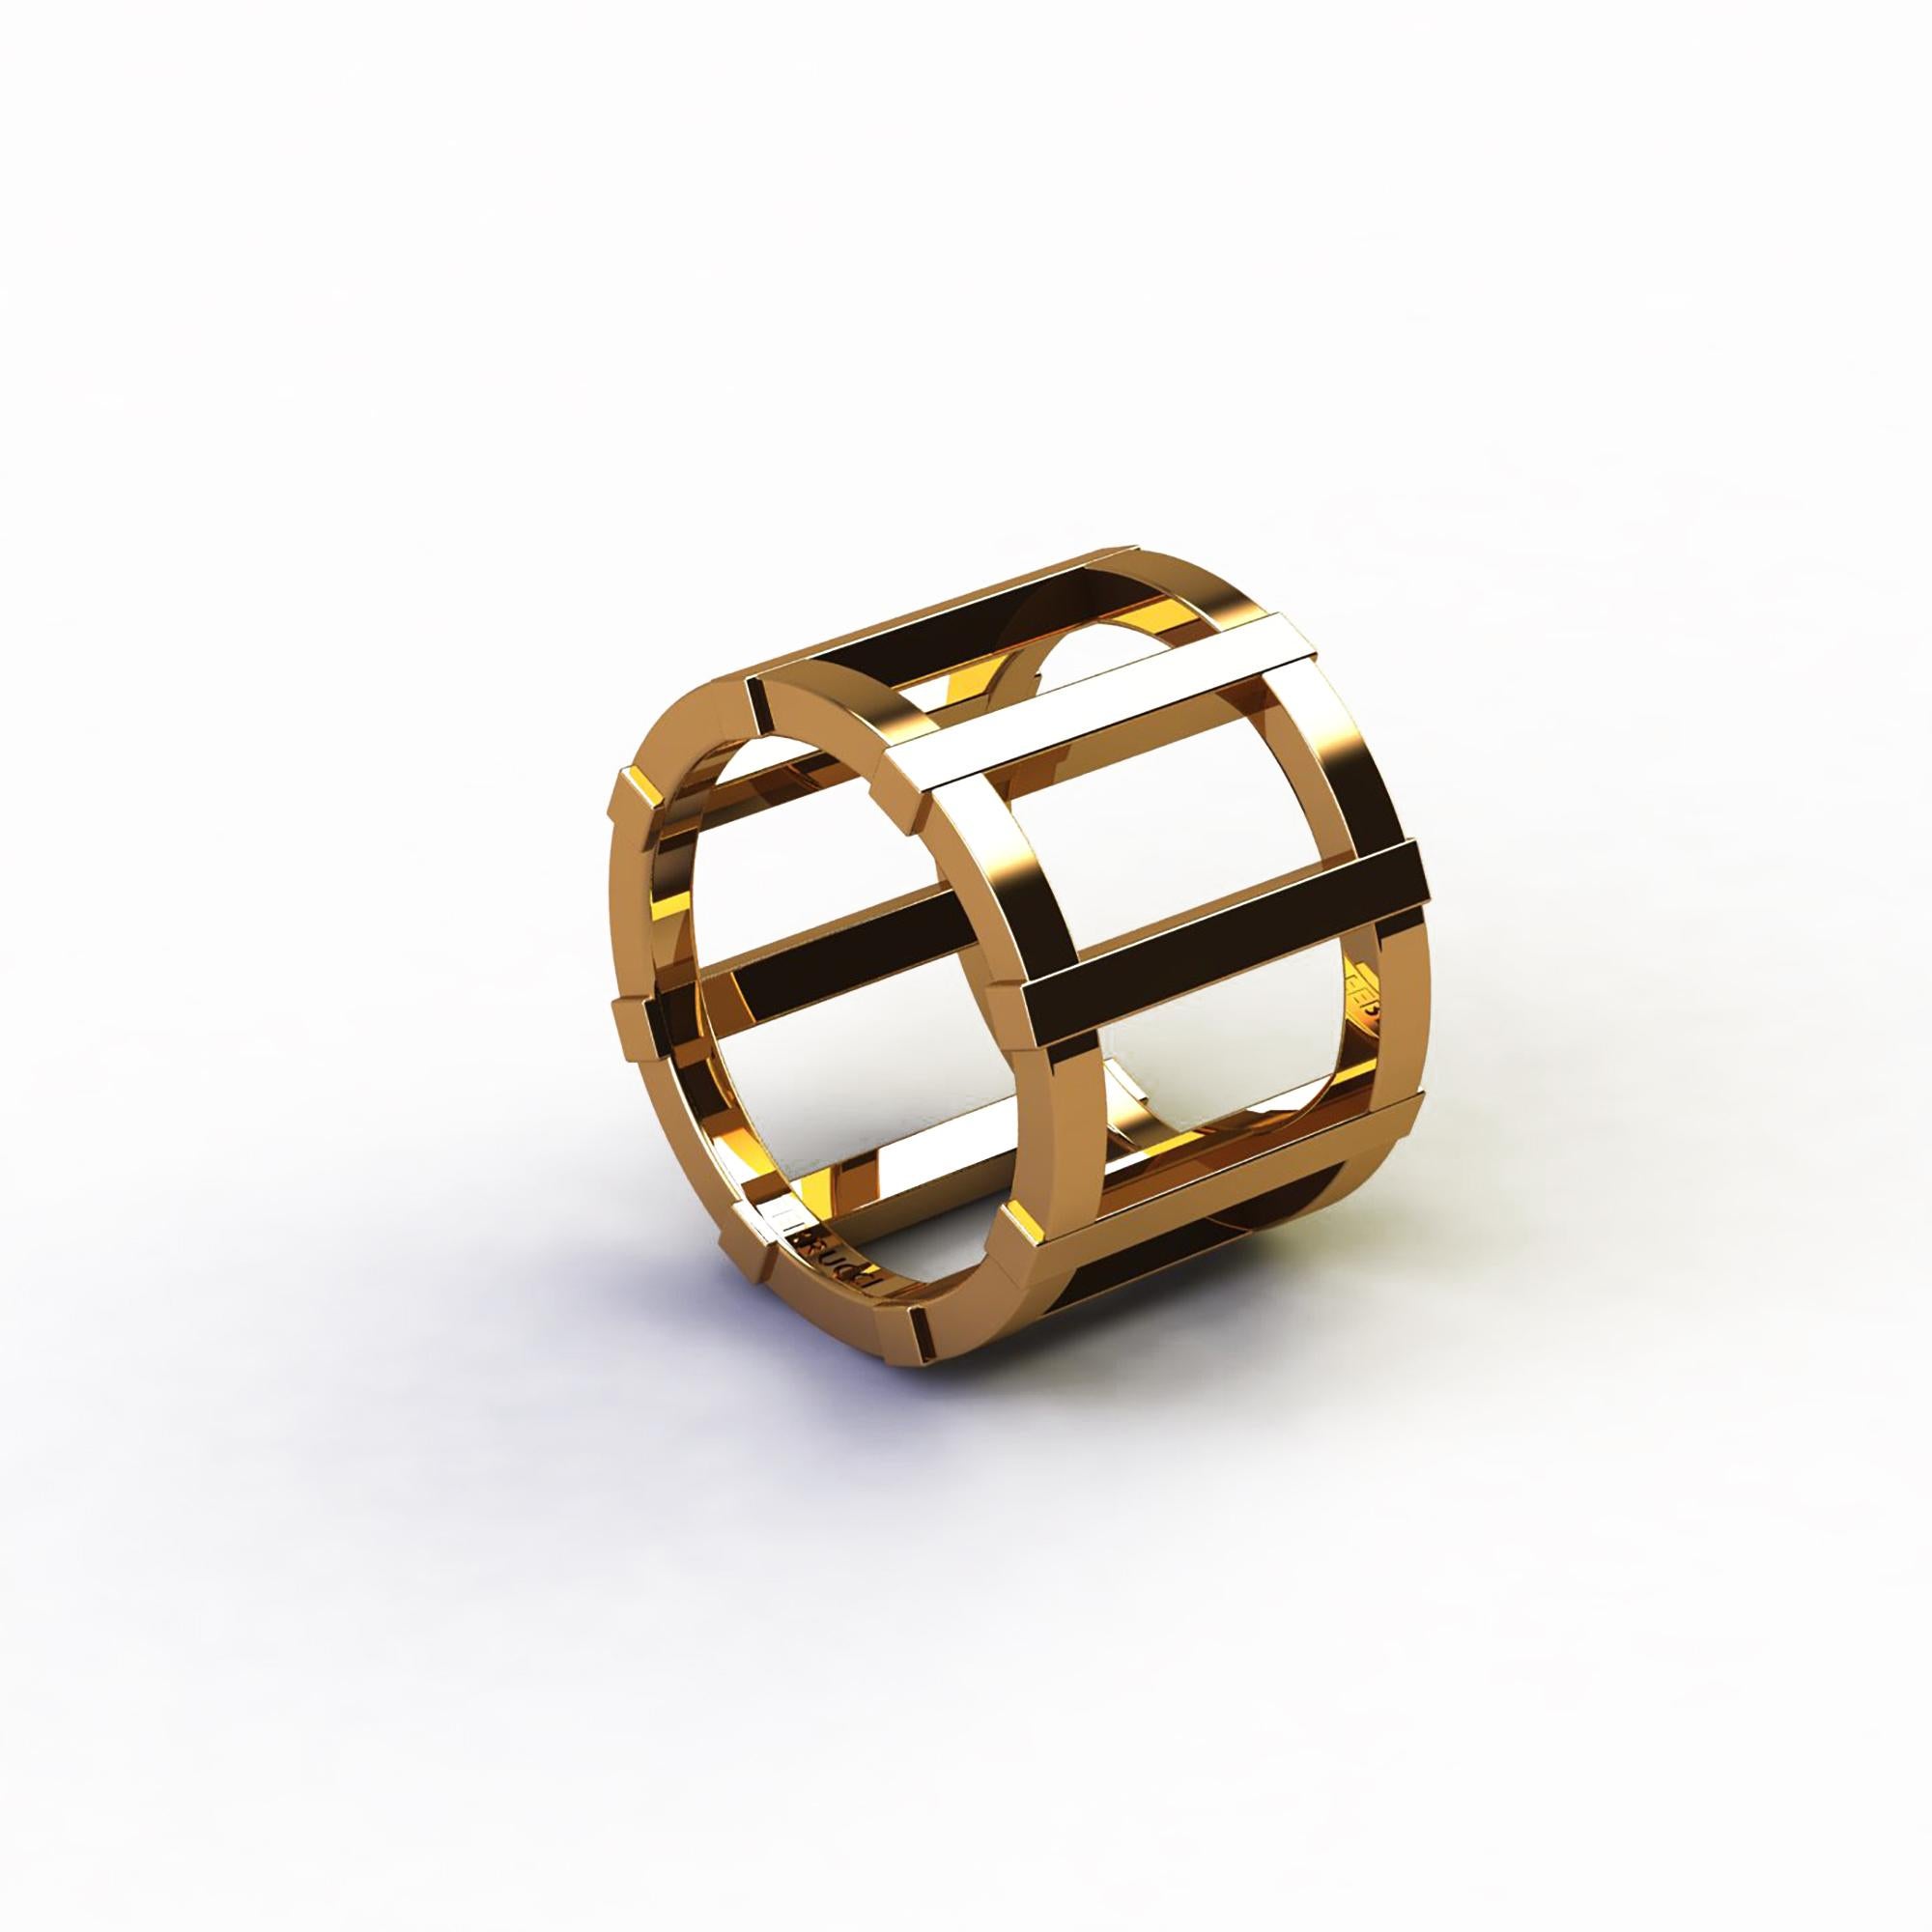 Original FERRUCCI Design, ein 18k Gelbgold Käfig breite Band Ring, kühn und geradlinig Design, modern und sauber, solide, aber feines Design.
Leicht zu tragen bei jeder Gelegenheit